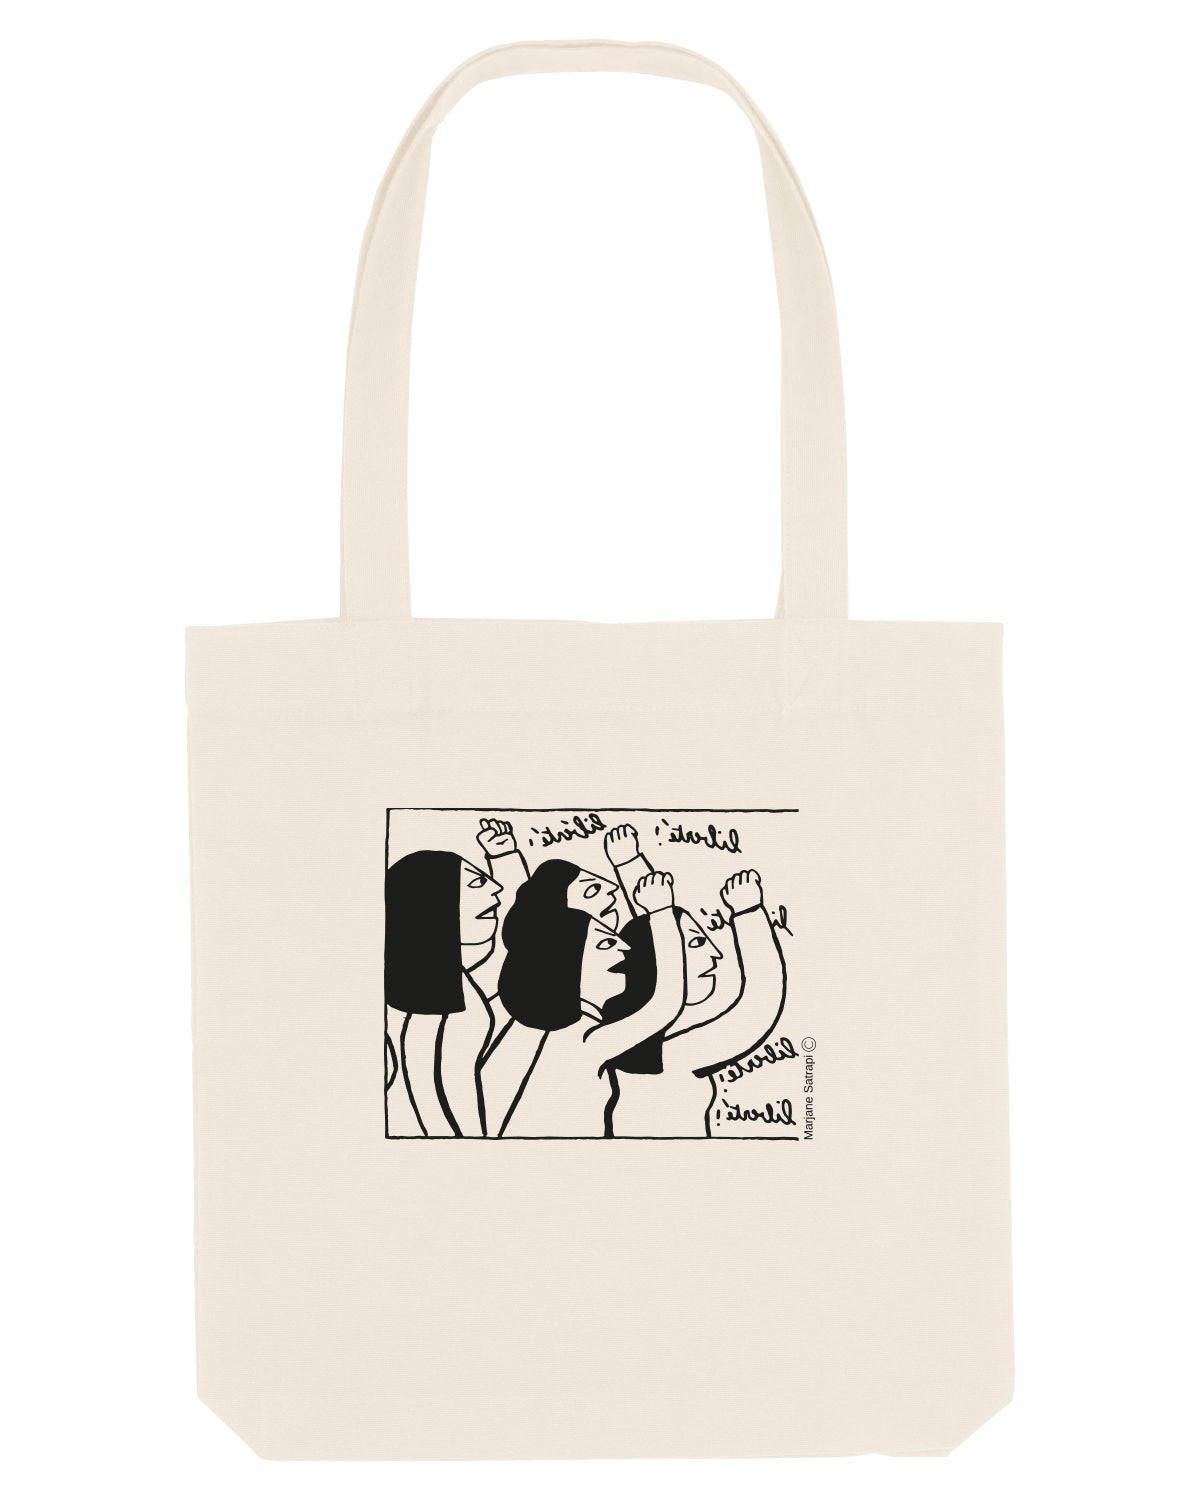 Tote Bag « Femme Vie Liberté »